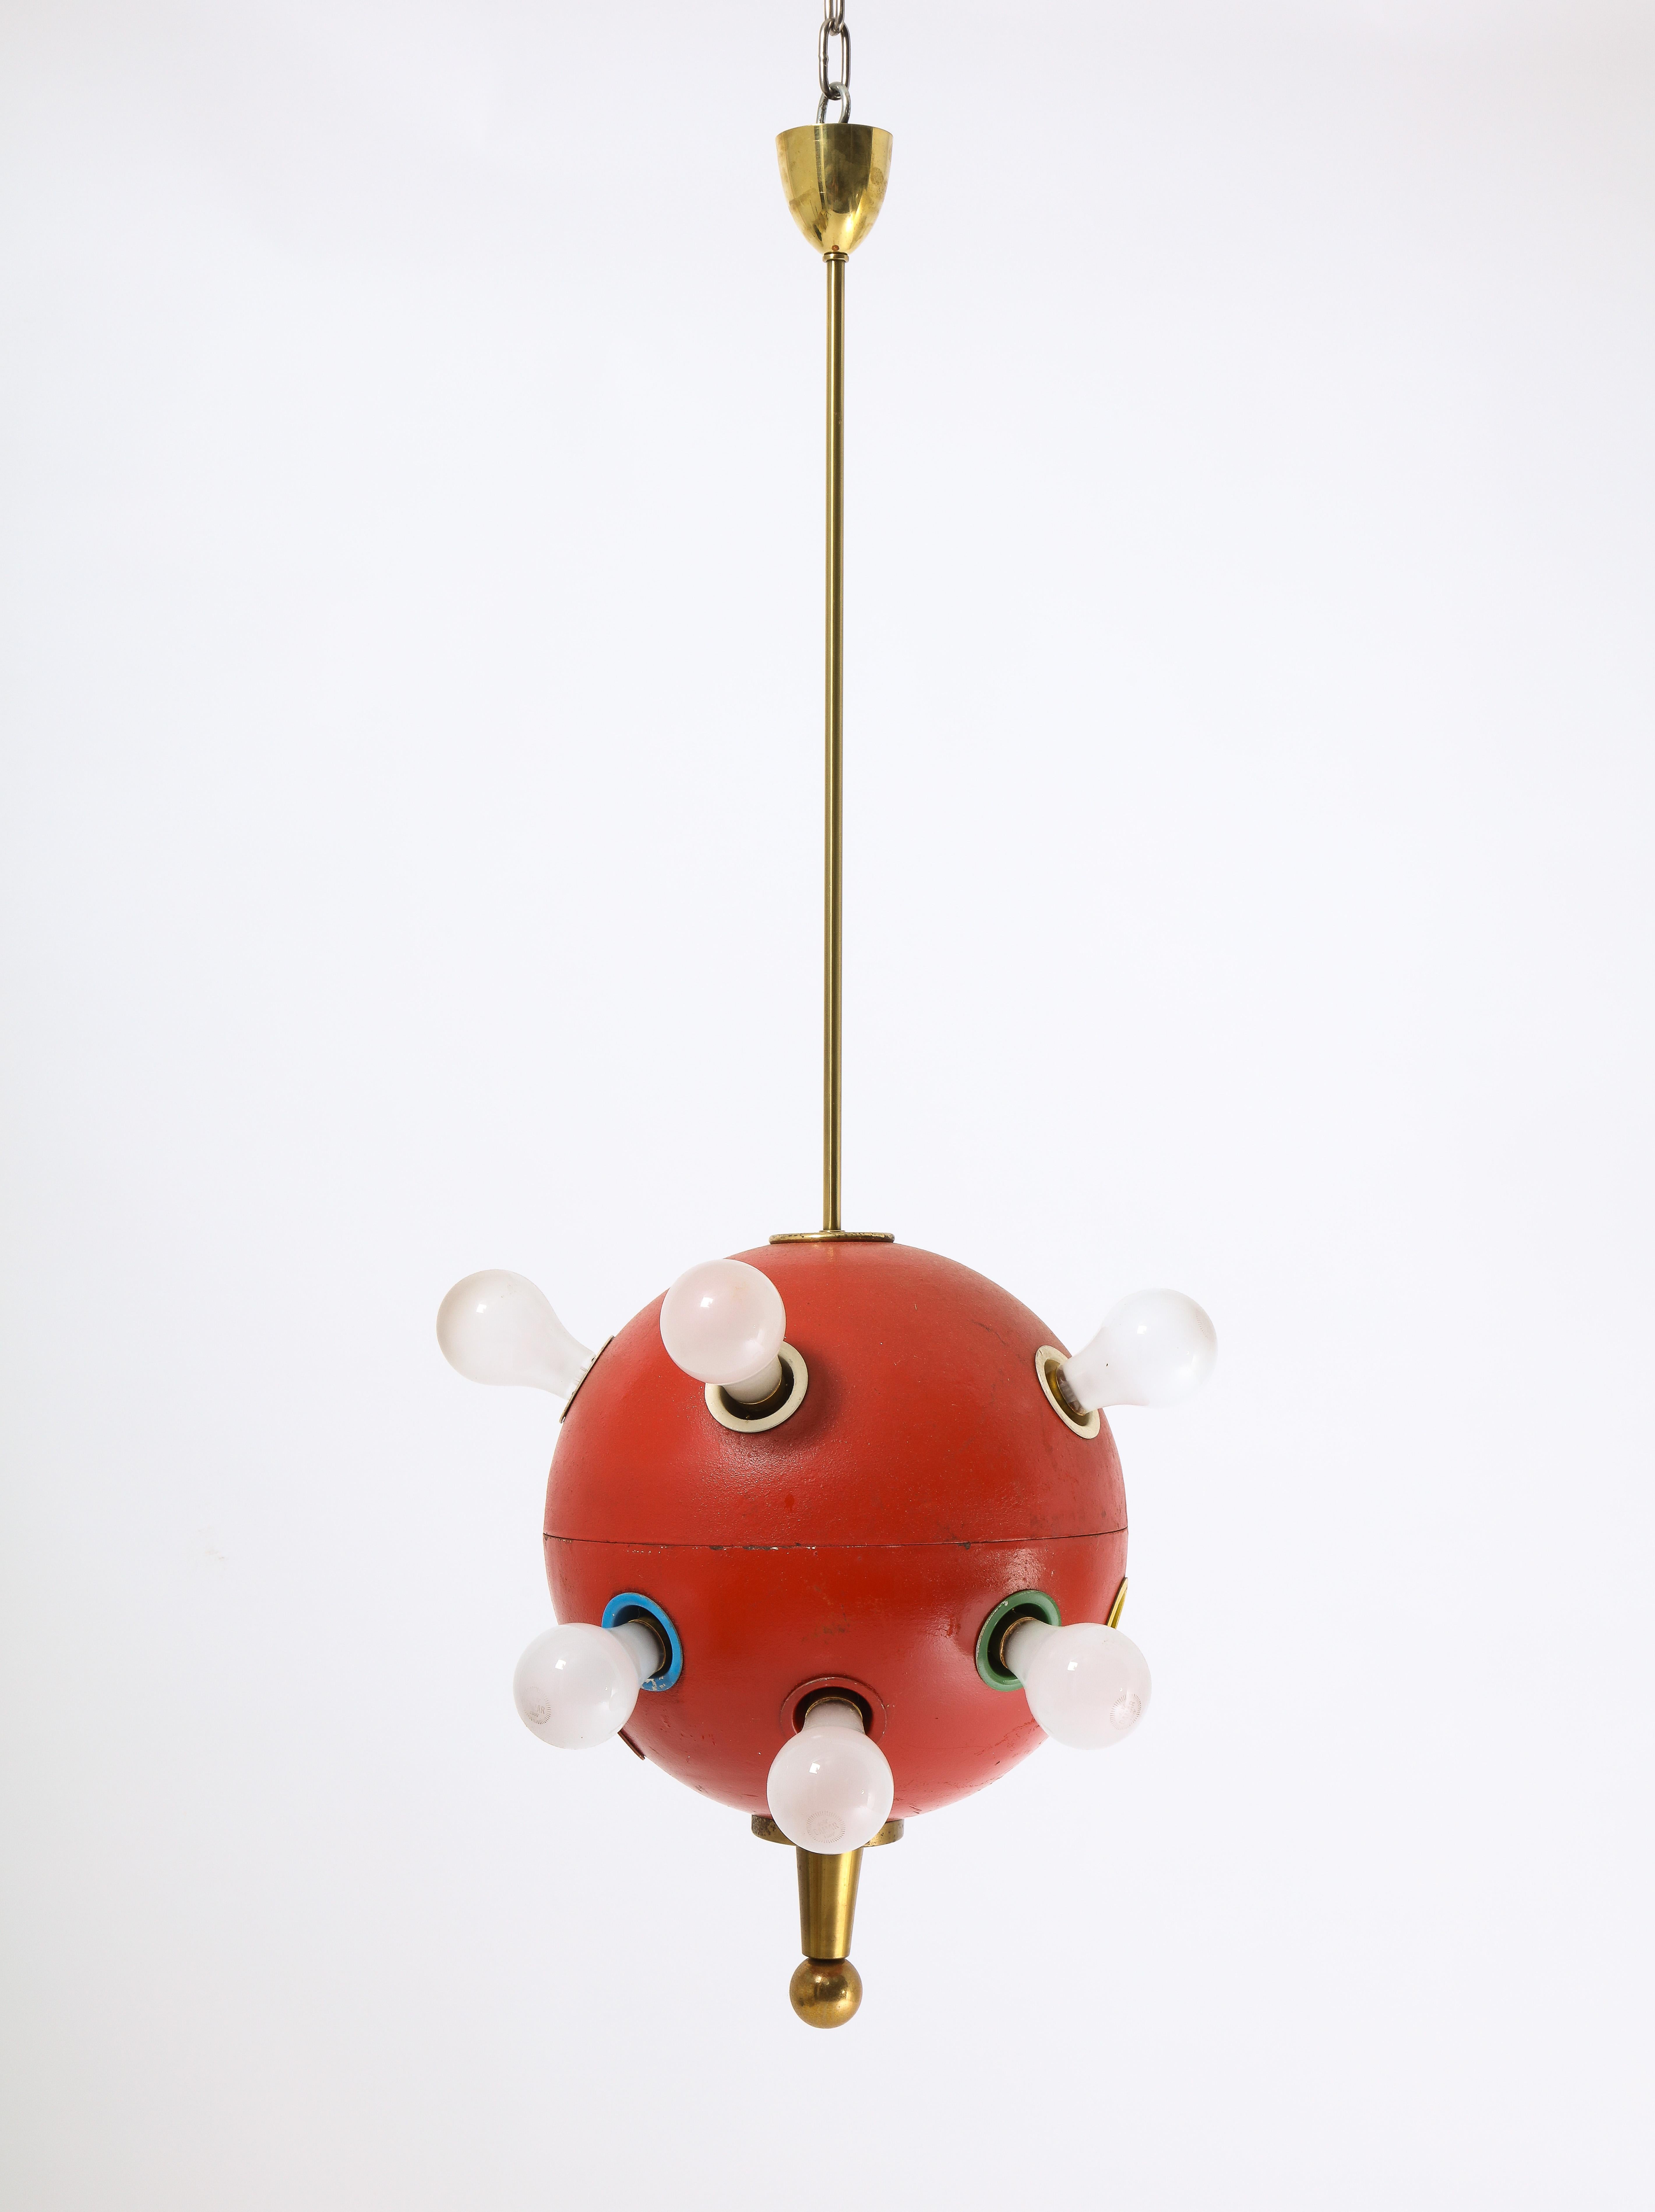 Rare pendentif sphérique 12 lumières 551 d'Oscar Torlasco en émail rouge d'origine avec inserts de couleurs primaires.

Le prix comprend le recâblage.